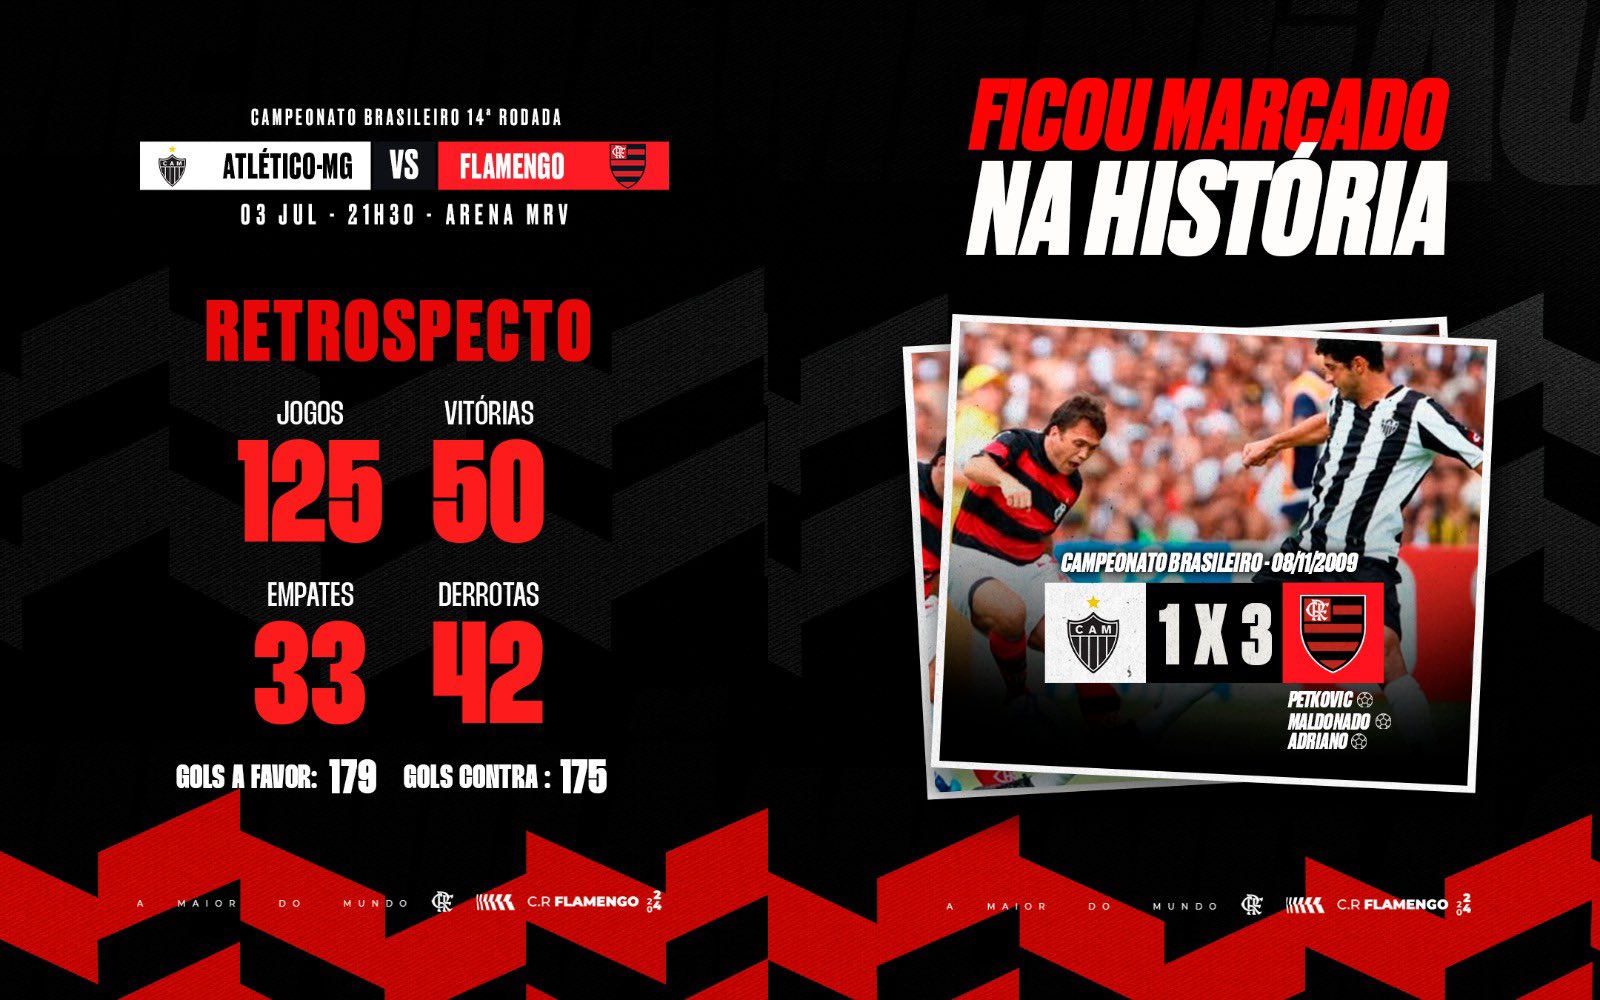 Foto: rede social X / Flamengo.